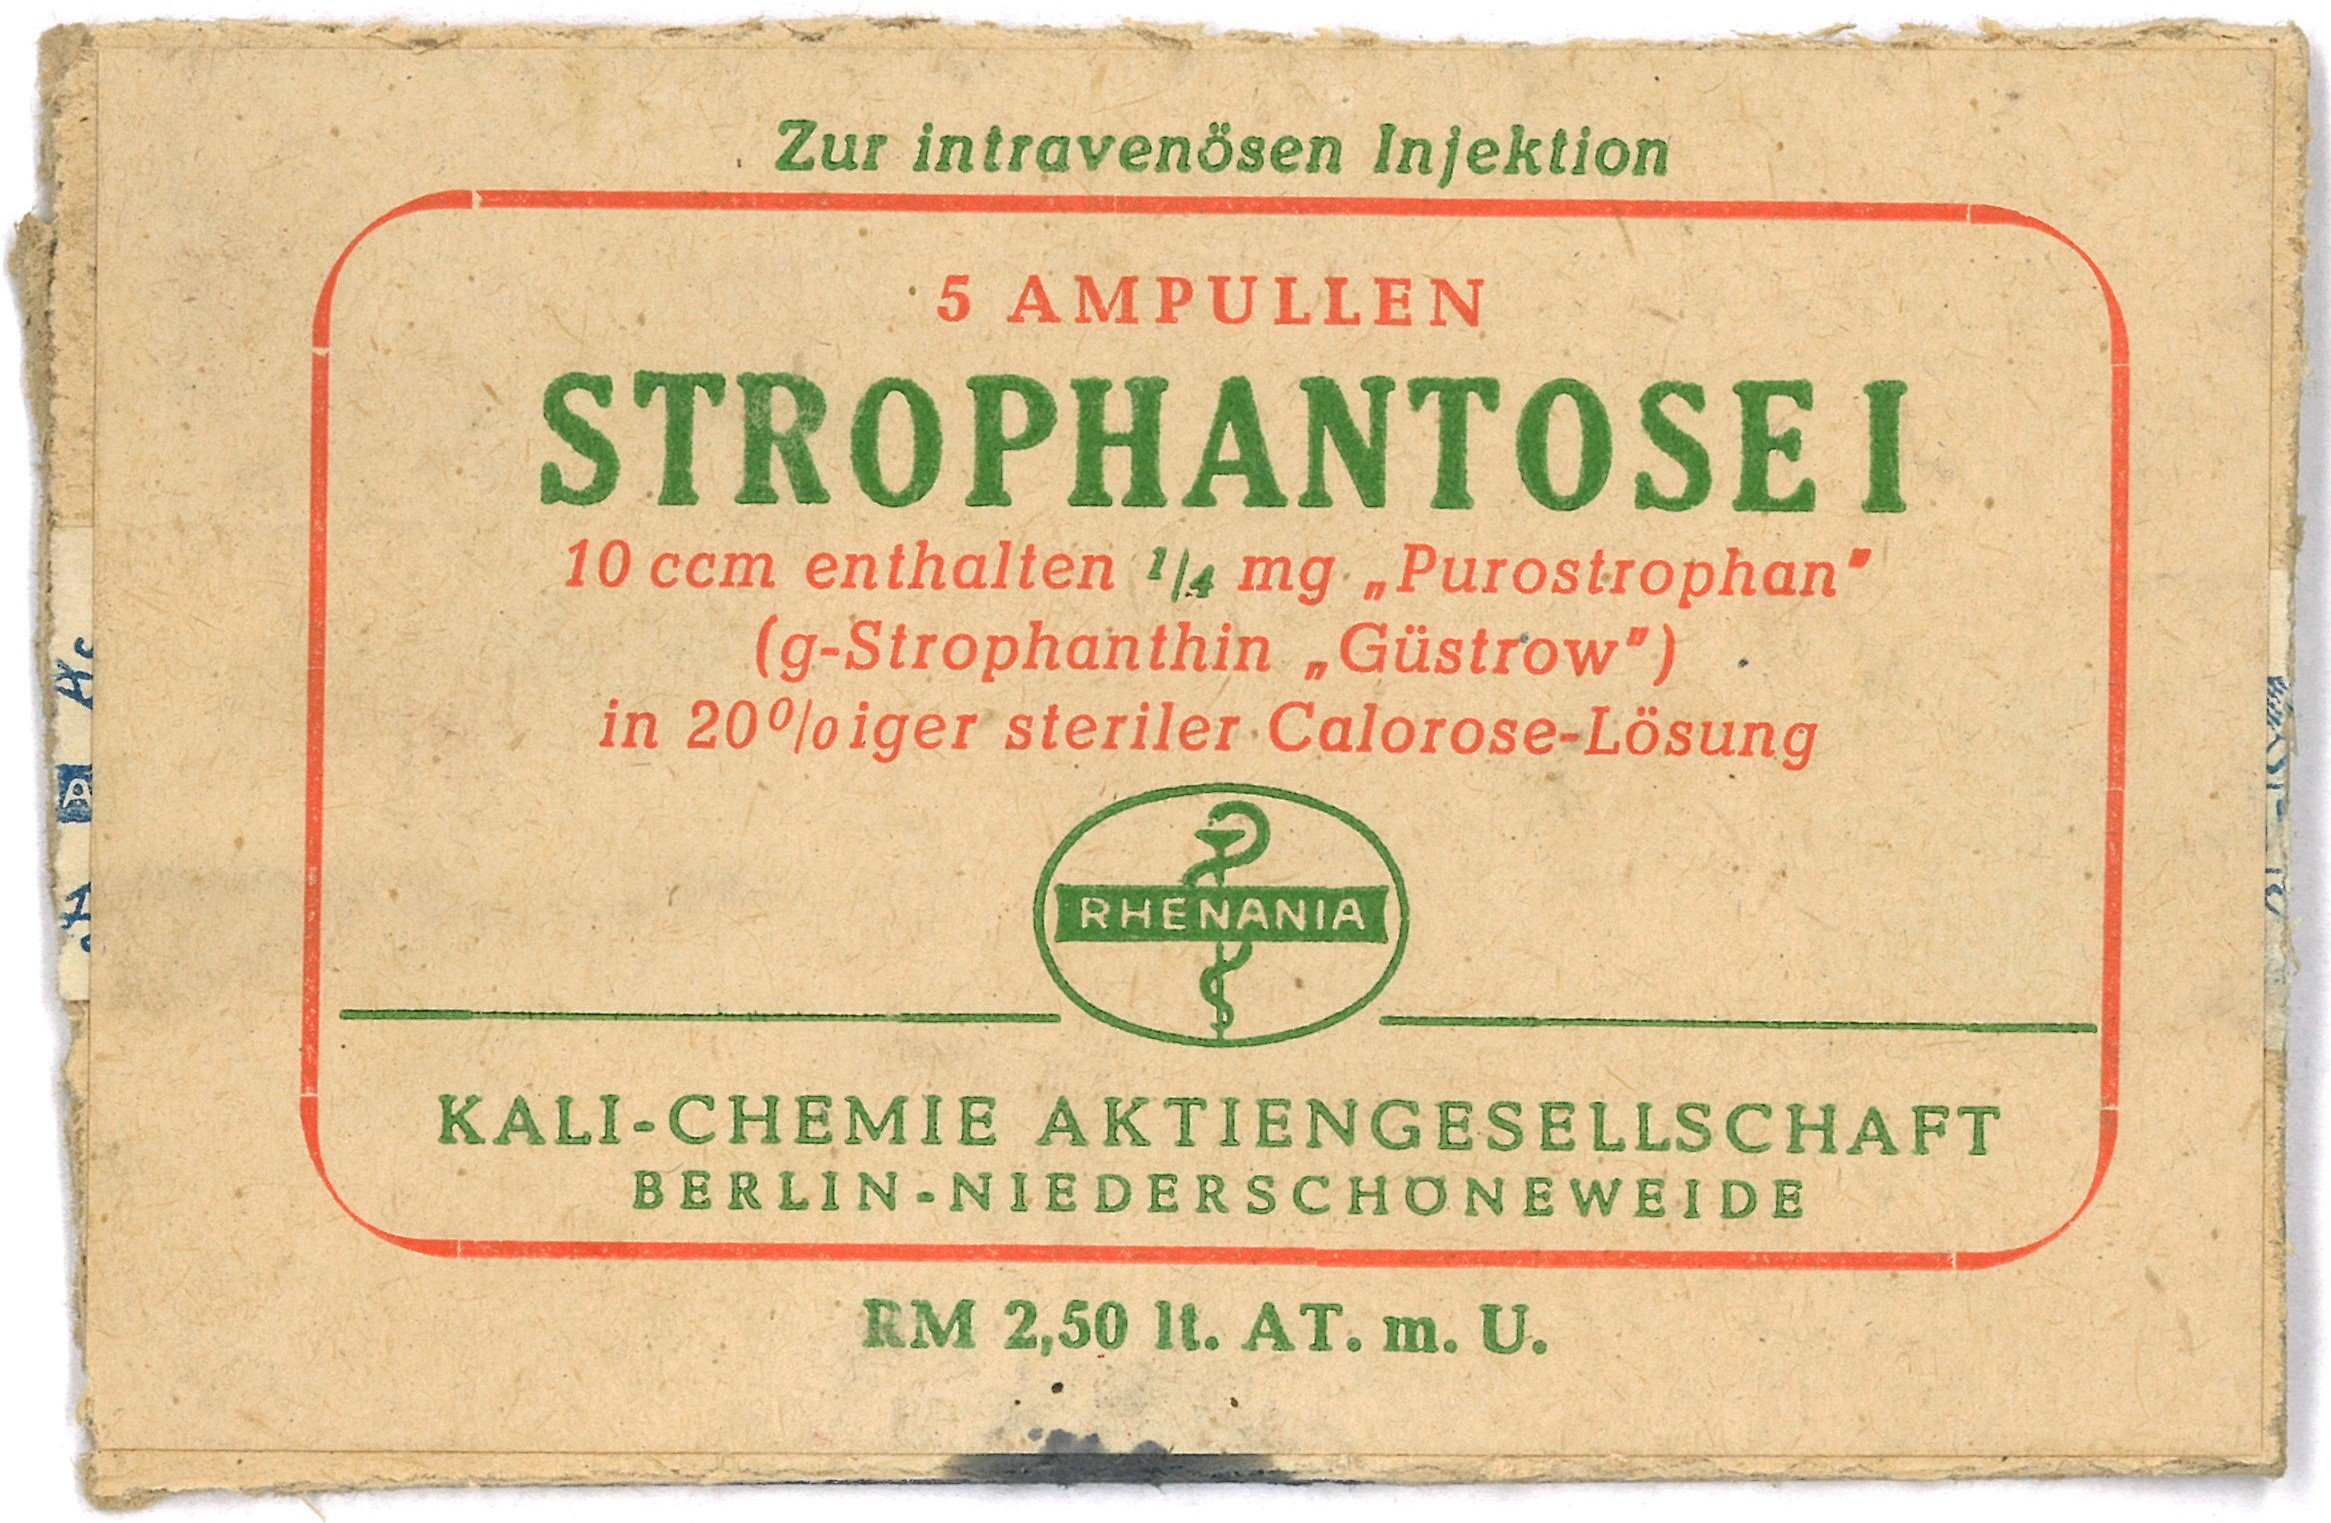 Berlin-Niederschöneweide, Rhenania Kali-Chemie AG: Strophantose-Ampullen (Landesgeschichtliche Vereinigung für die Mark Brandenburg e.V., Archiv CC BY)